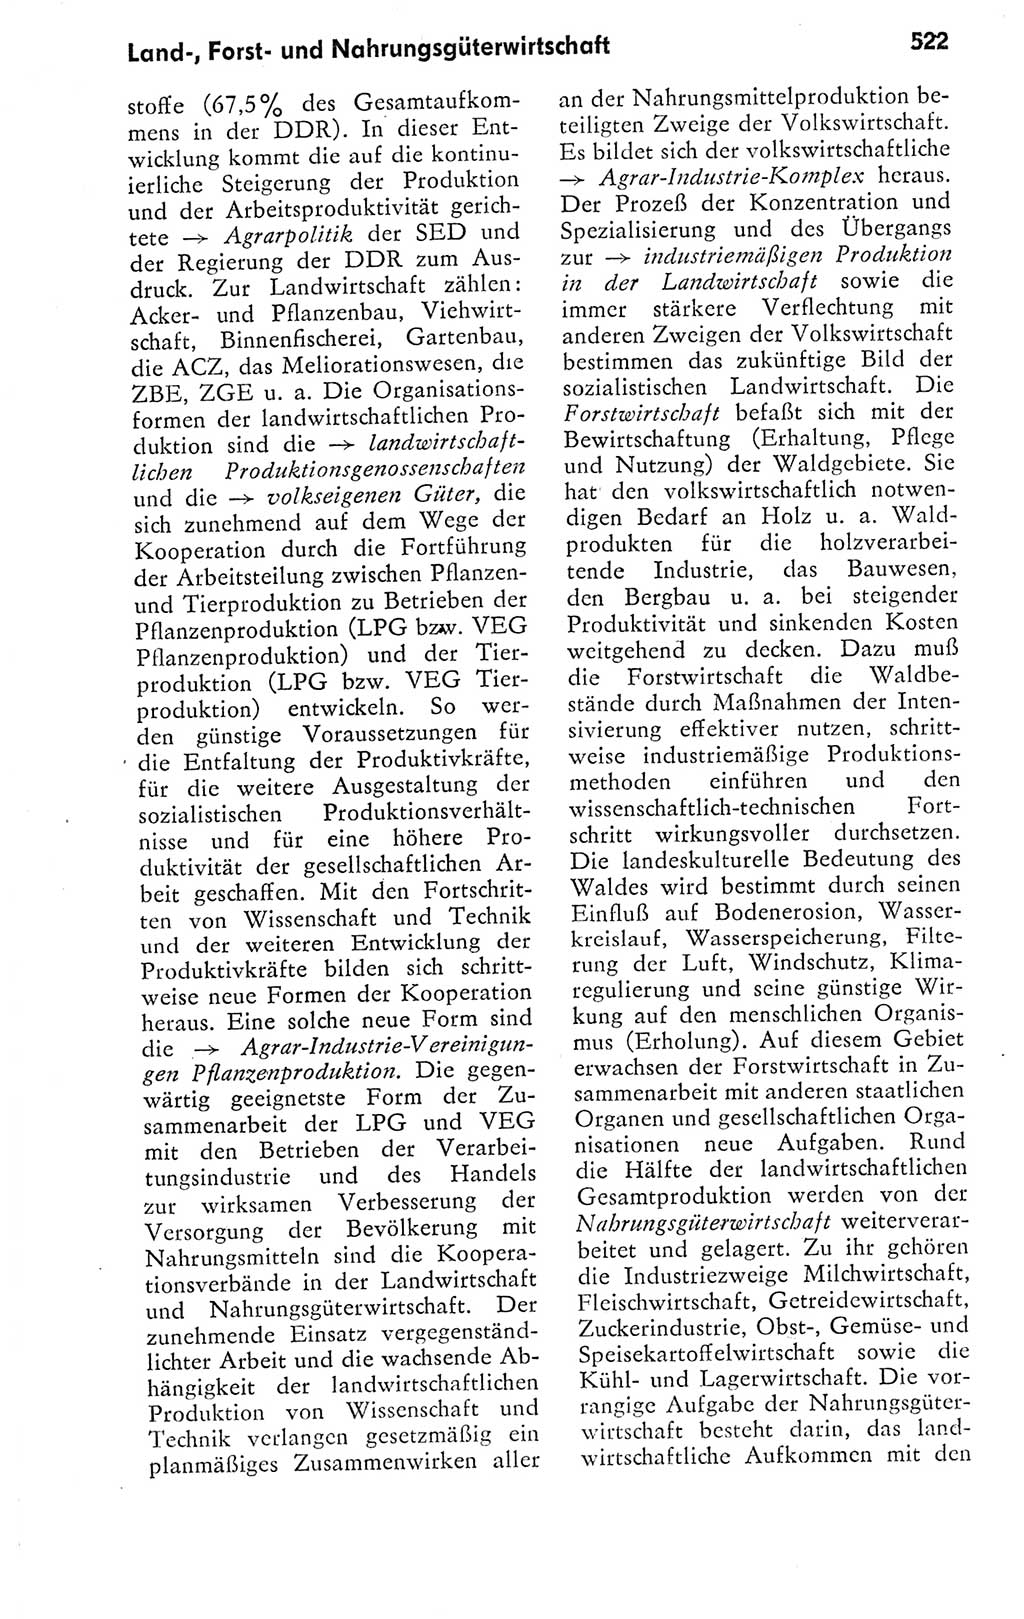 Kleines politisches Wörterbuch [Deutsche Demokratische Republik (DDR)] 1978, Seite 522 (Kl. pol. Wb. DDR 1978, S. 522)